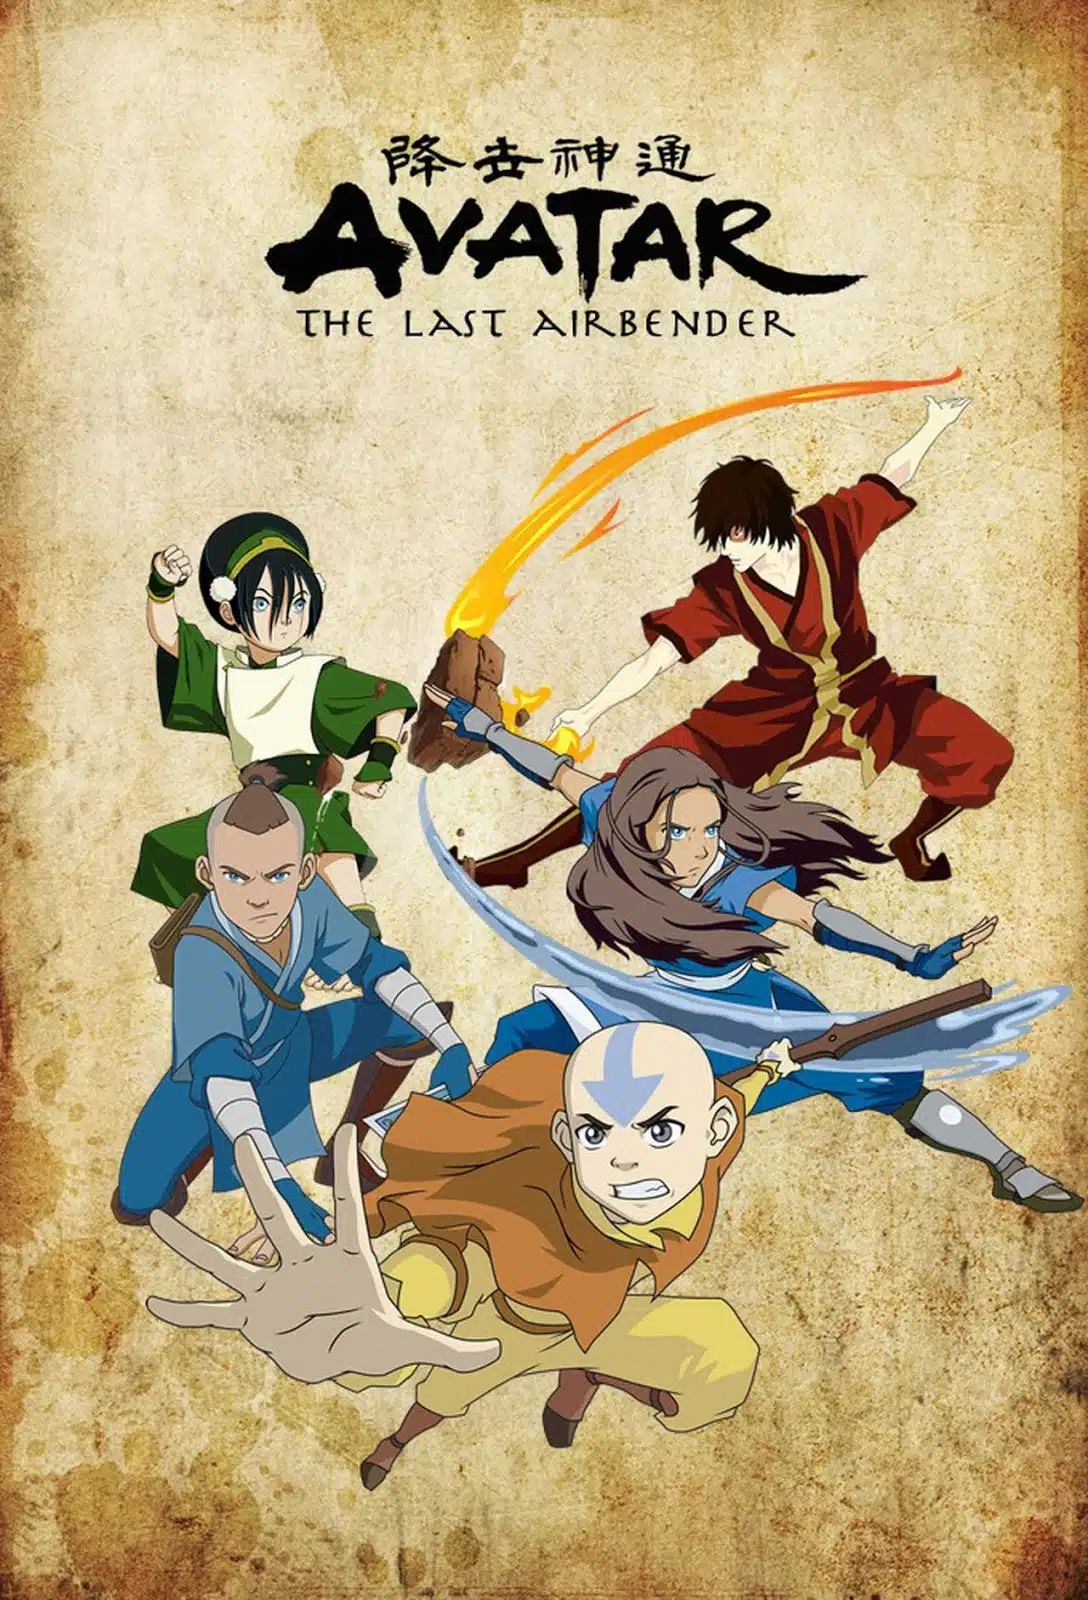 Foi revelado que Avatar: A Lenda de Aang (The Last Airbender) ganhará nova animação em 2025, com produção da Avatar Studios.